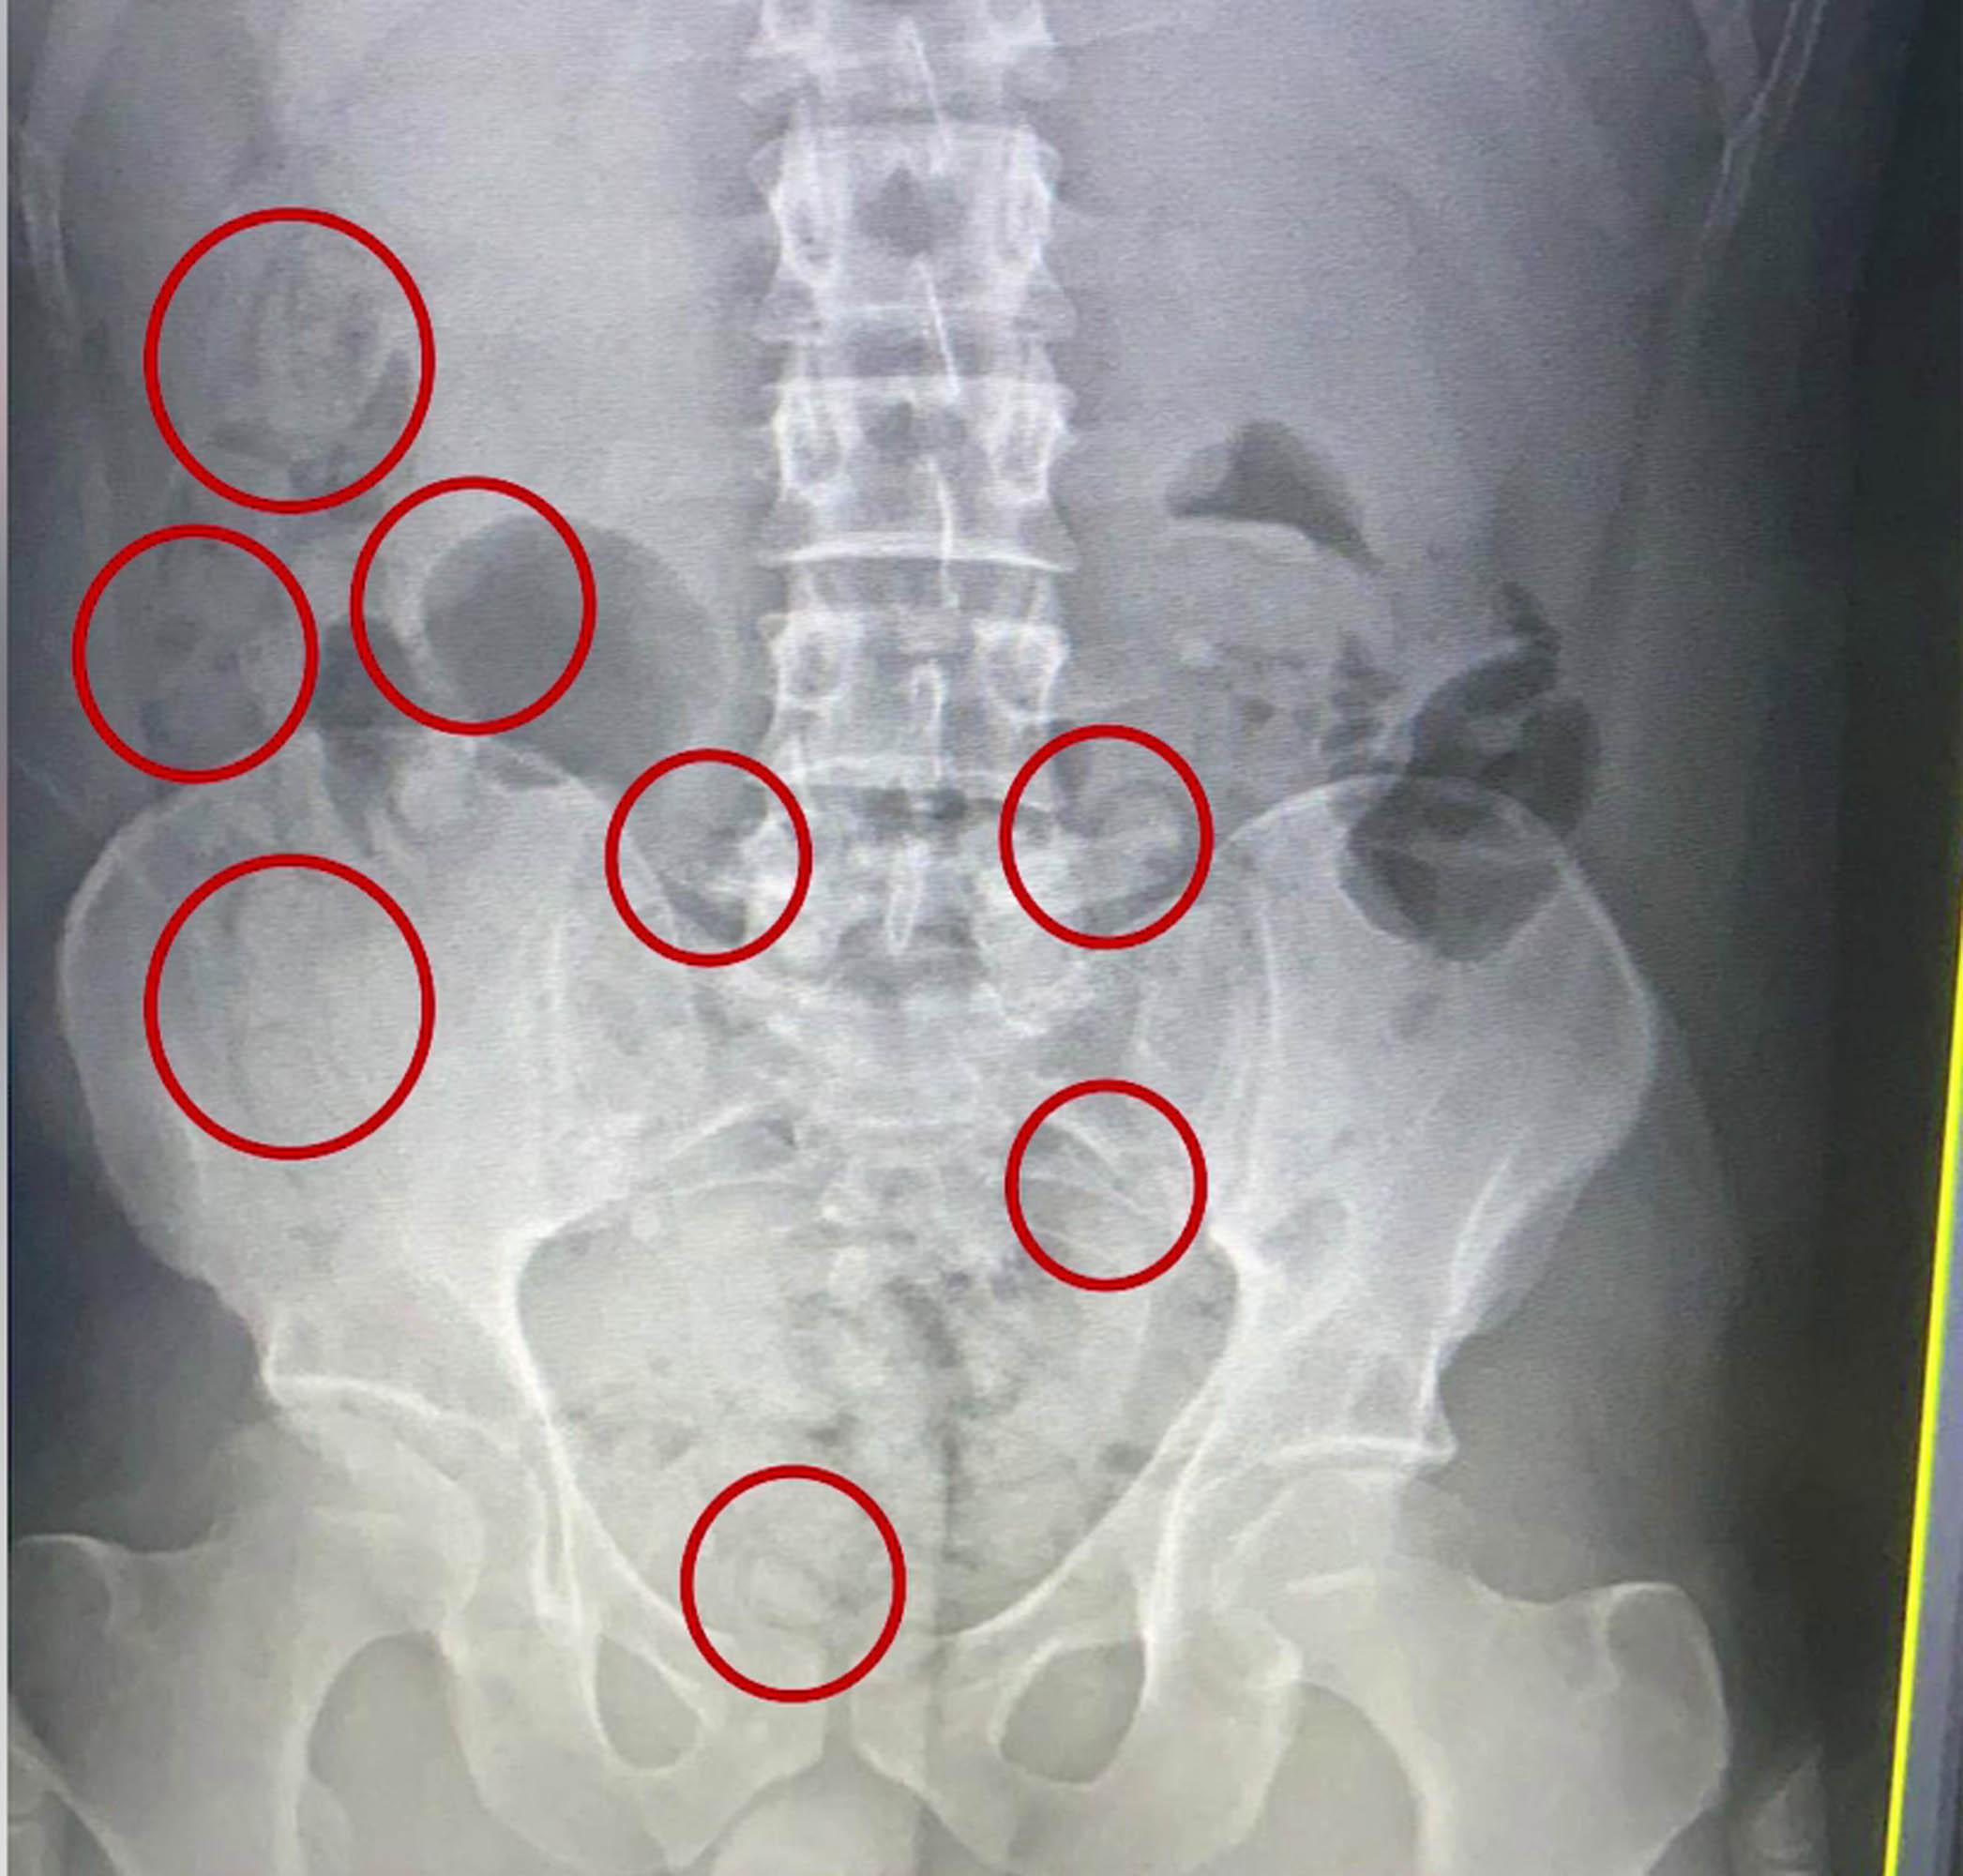 İranlının mide ve bağırsağındaki uyuşturucu röntgende ortaya çıktı